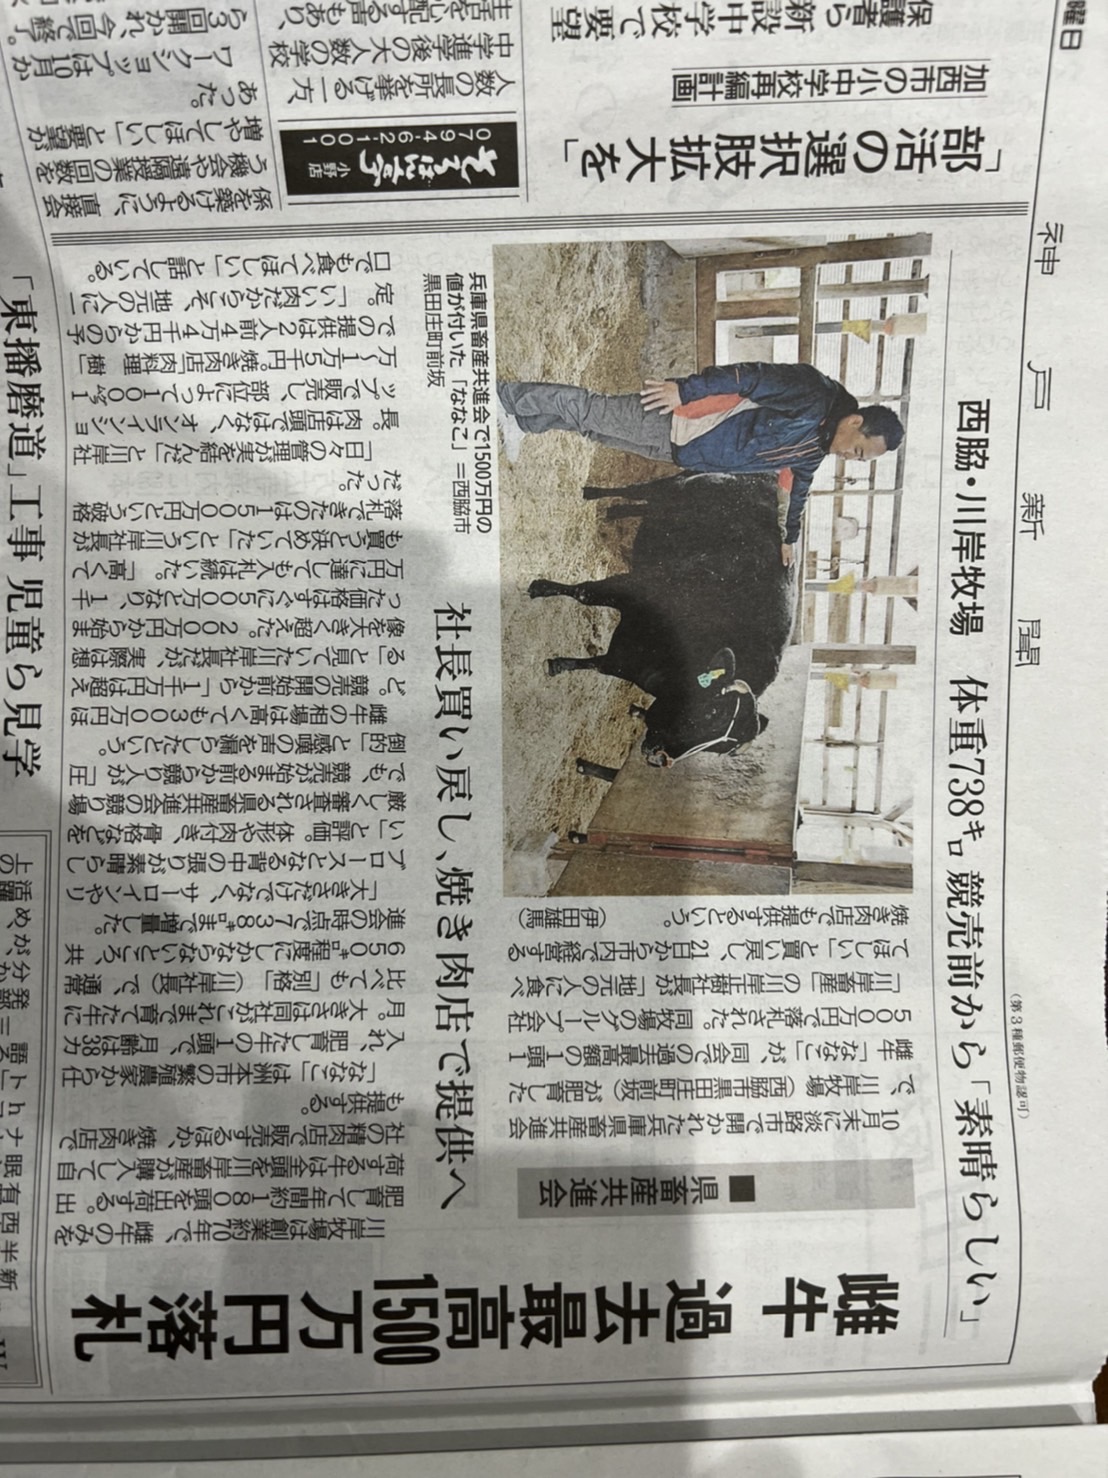 兵庫県畜産共進会　(11月9日神戸新聞記事)